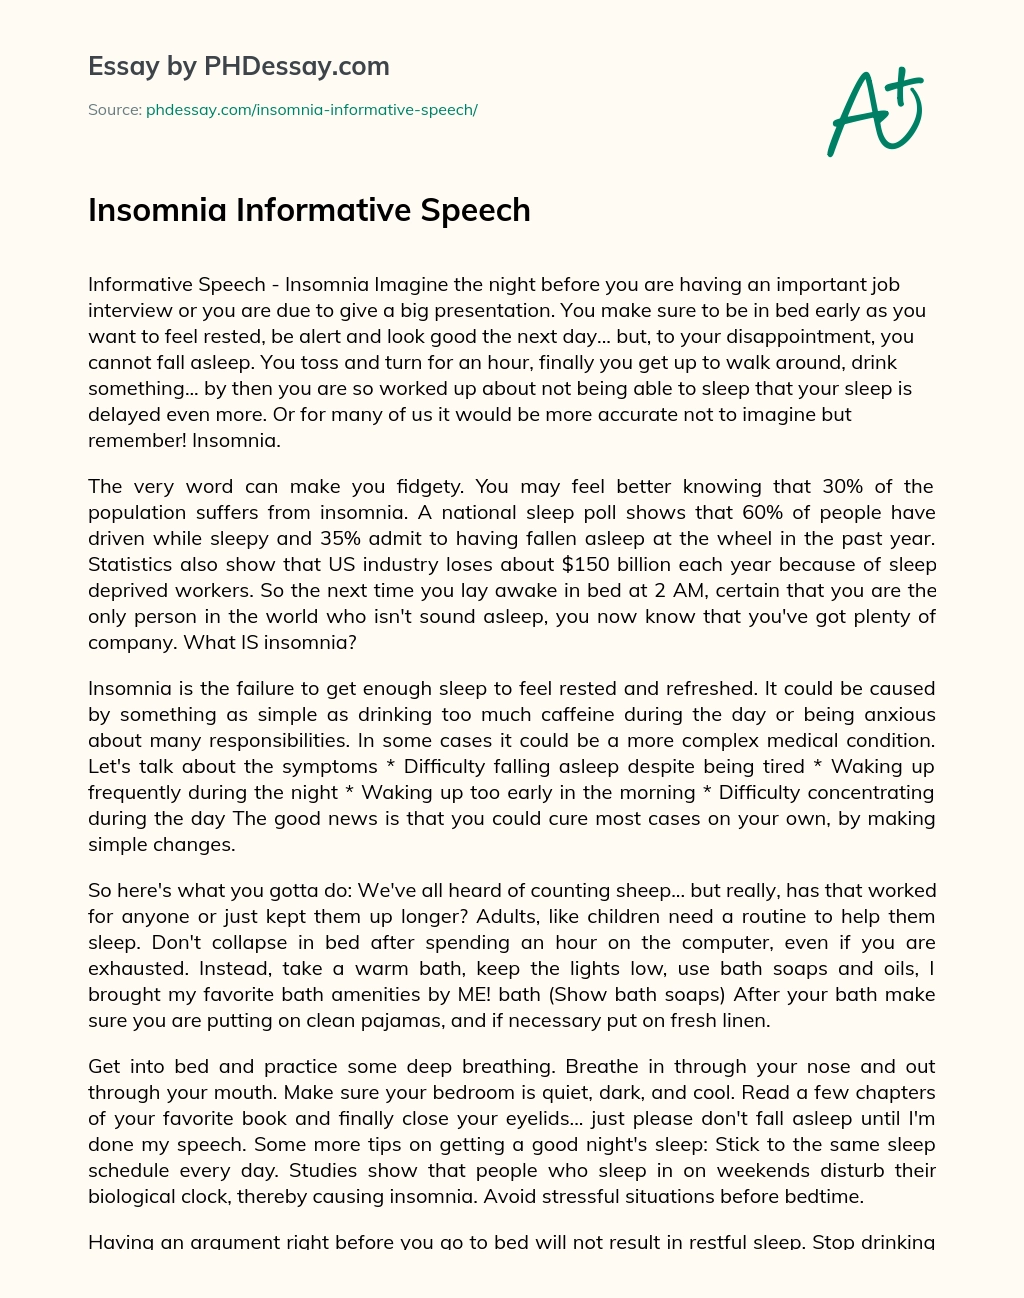 Insomnia Informative Speech essay